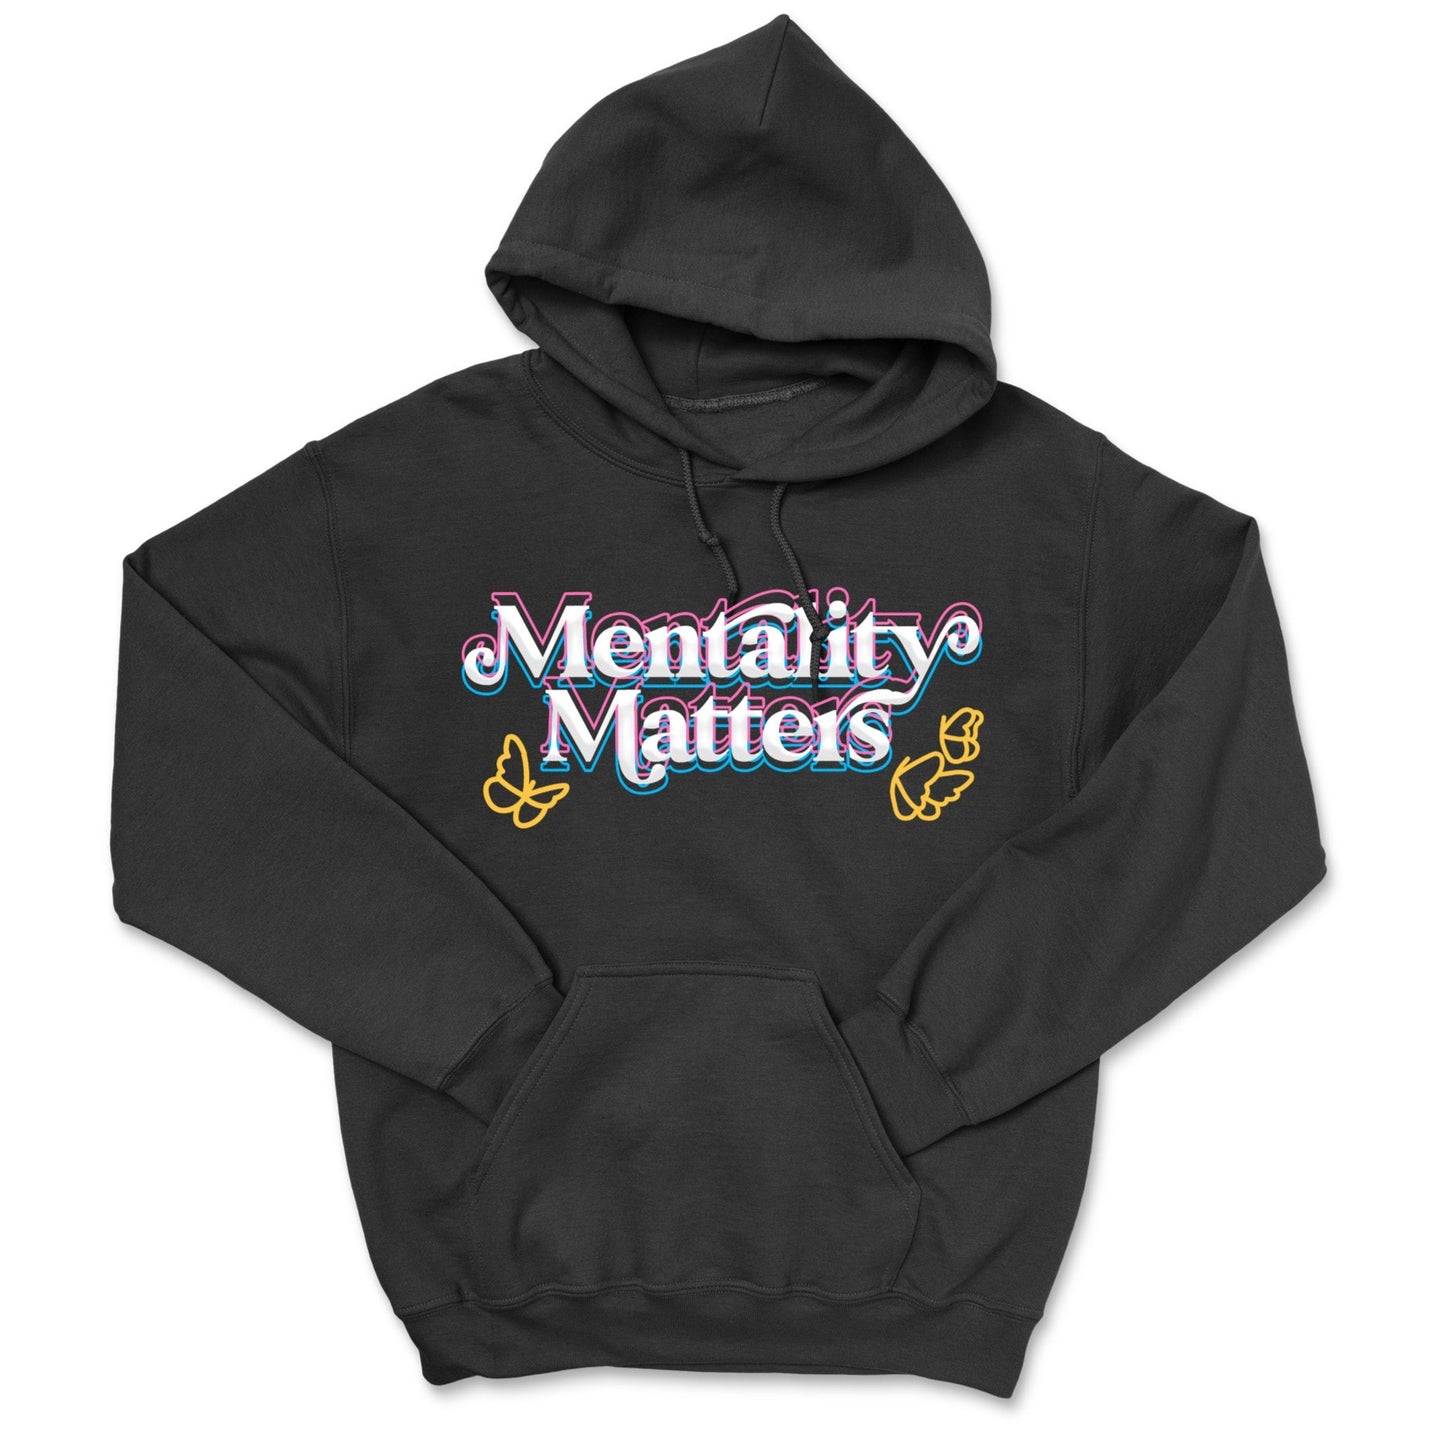 Mentality Matters Hoodie - Black